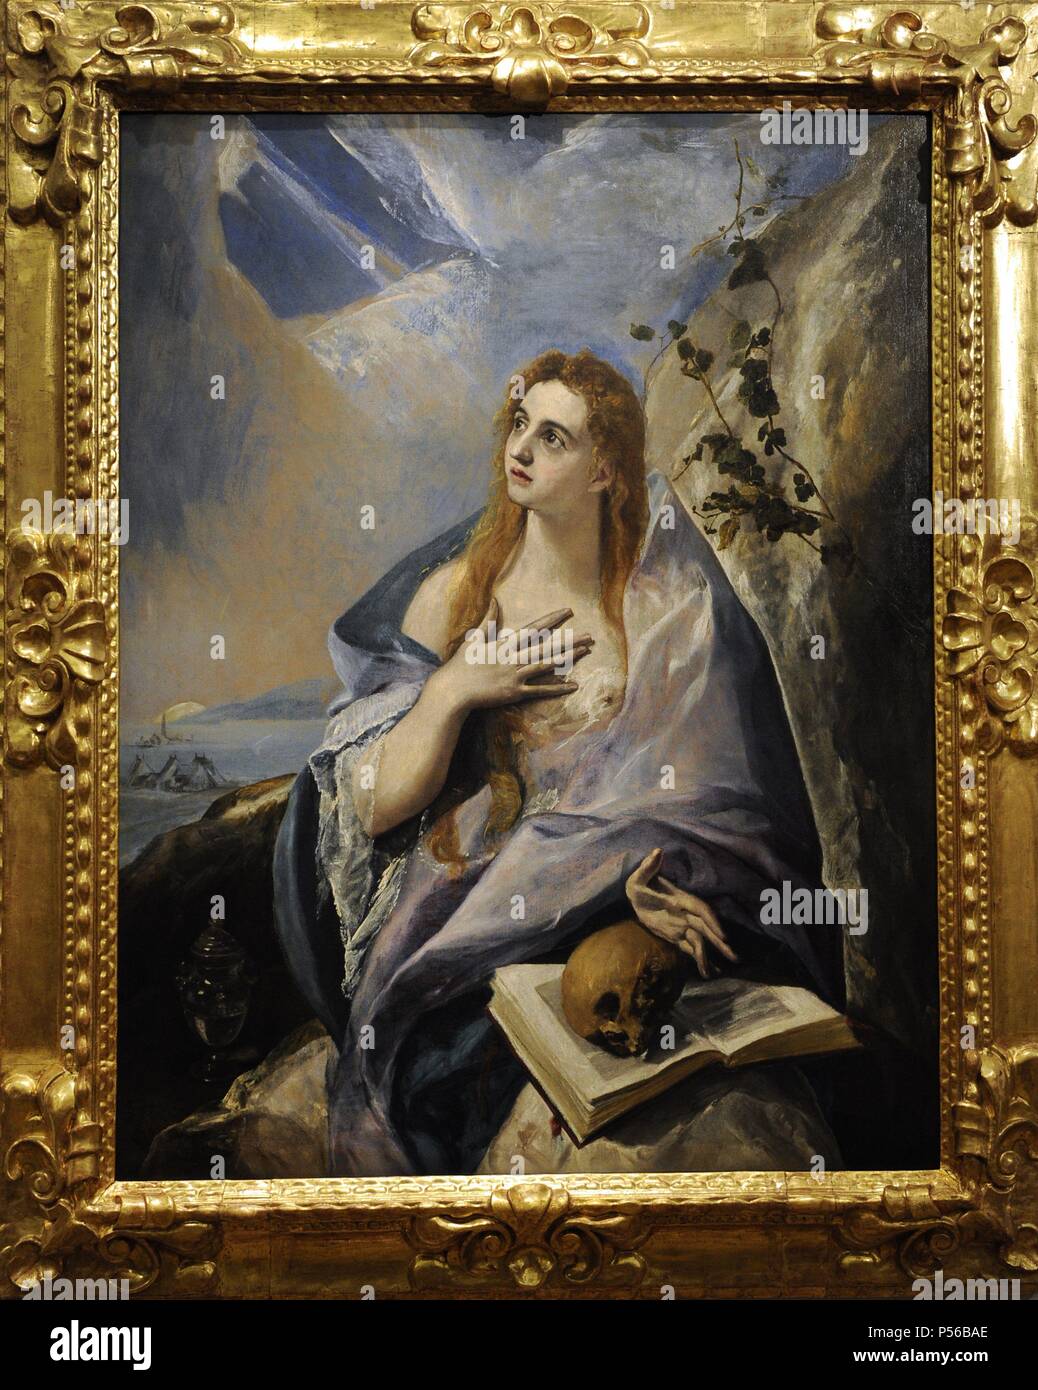 El Greco (1541-1614). Kretischen Maler. Die reuige Magdalena, 1576-1577. Museum der bildenden Künste. Budapest. Ungarn. Stockfoto